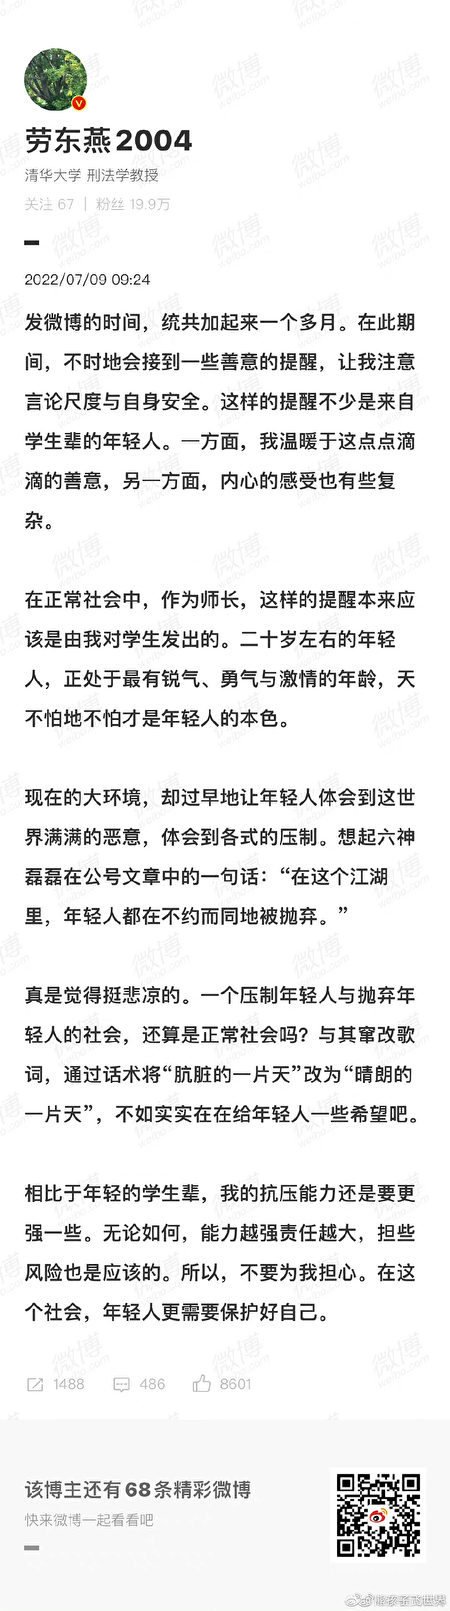 清華法學教授吁追究河南打人者 博文被強制屏蔽